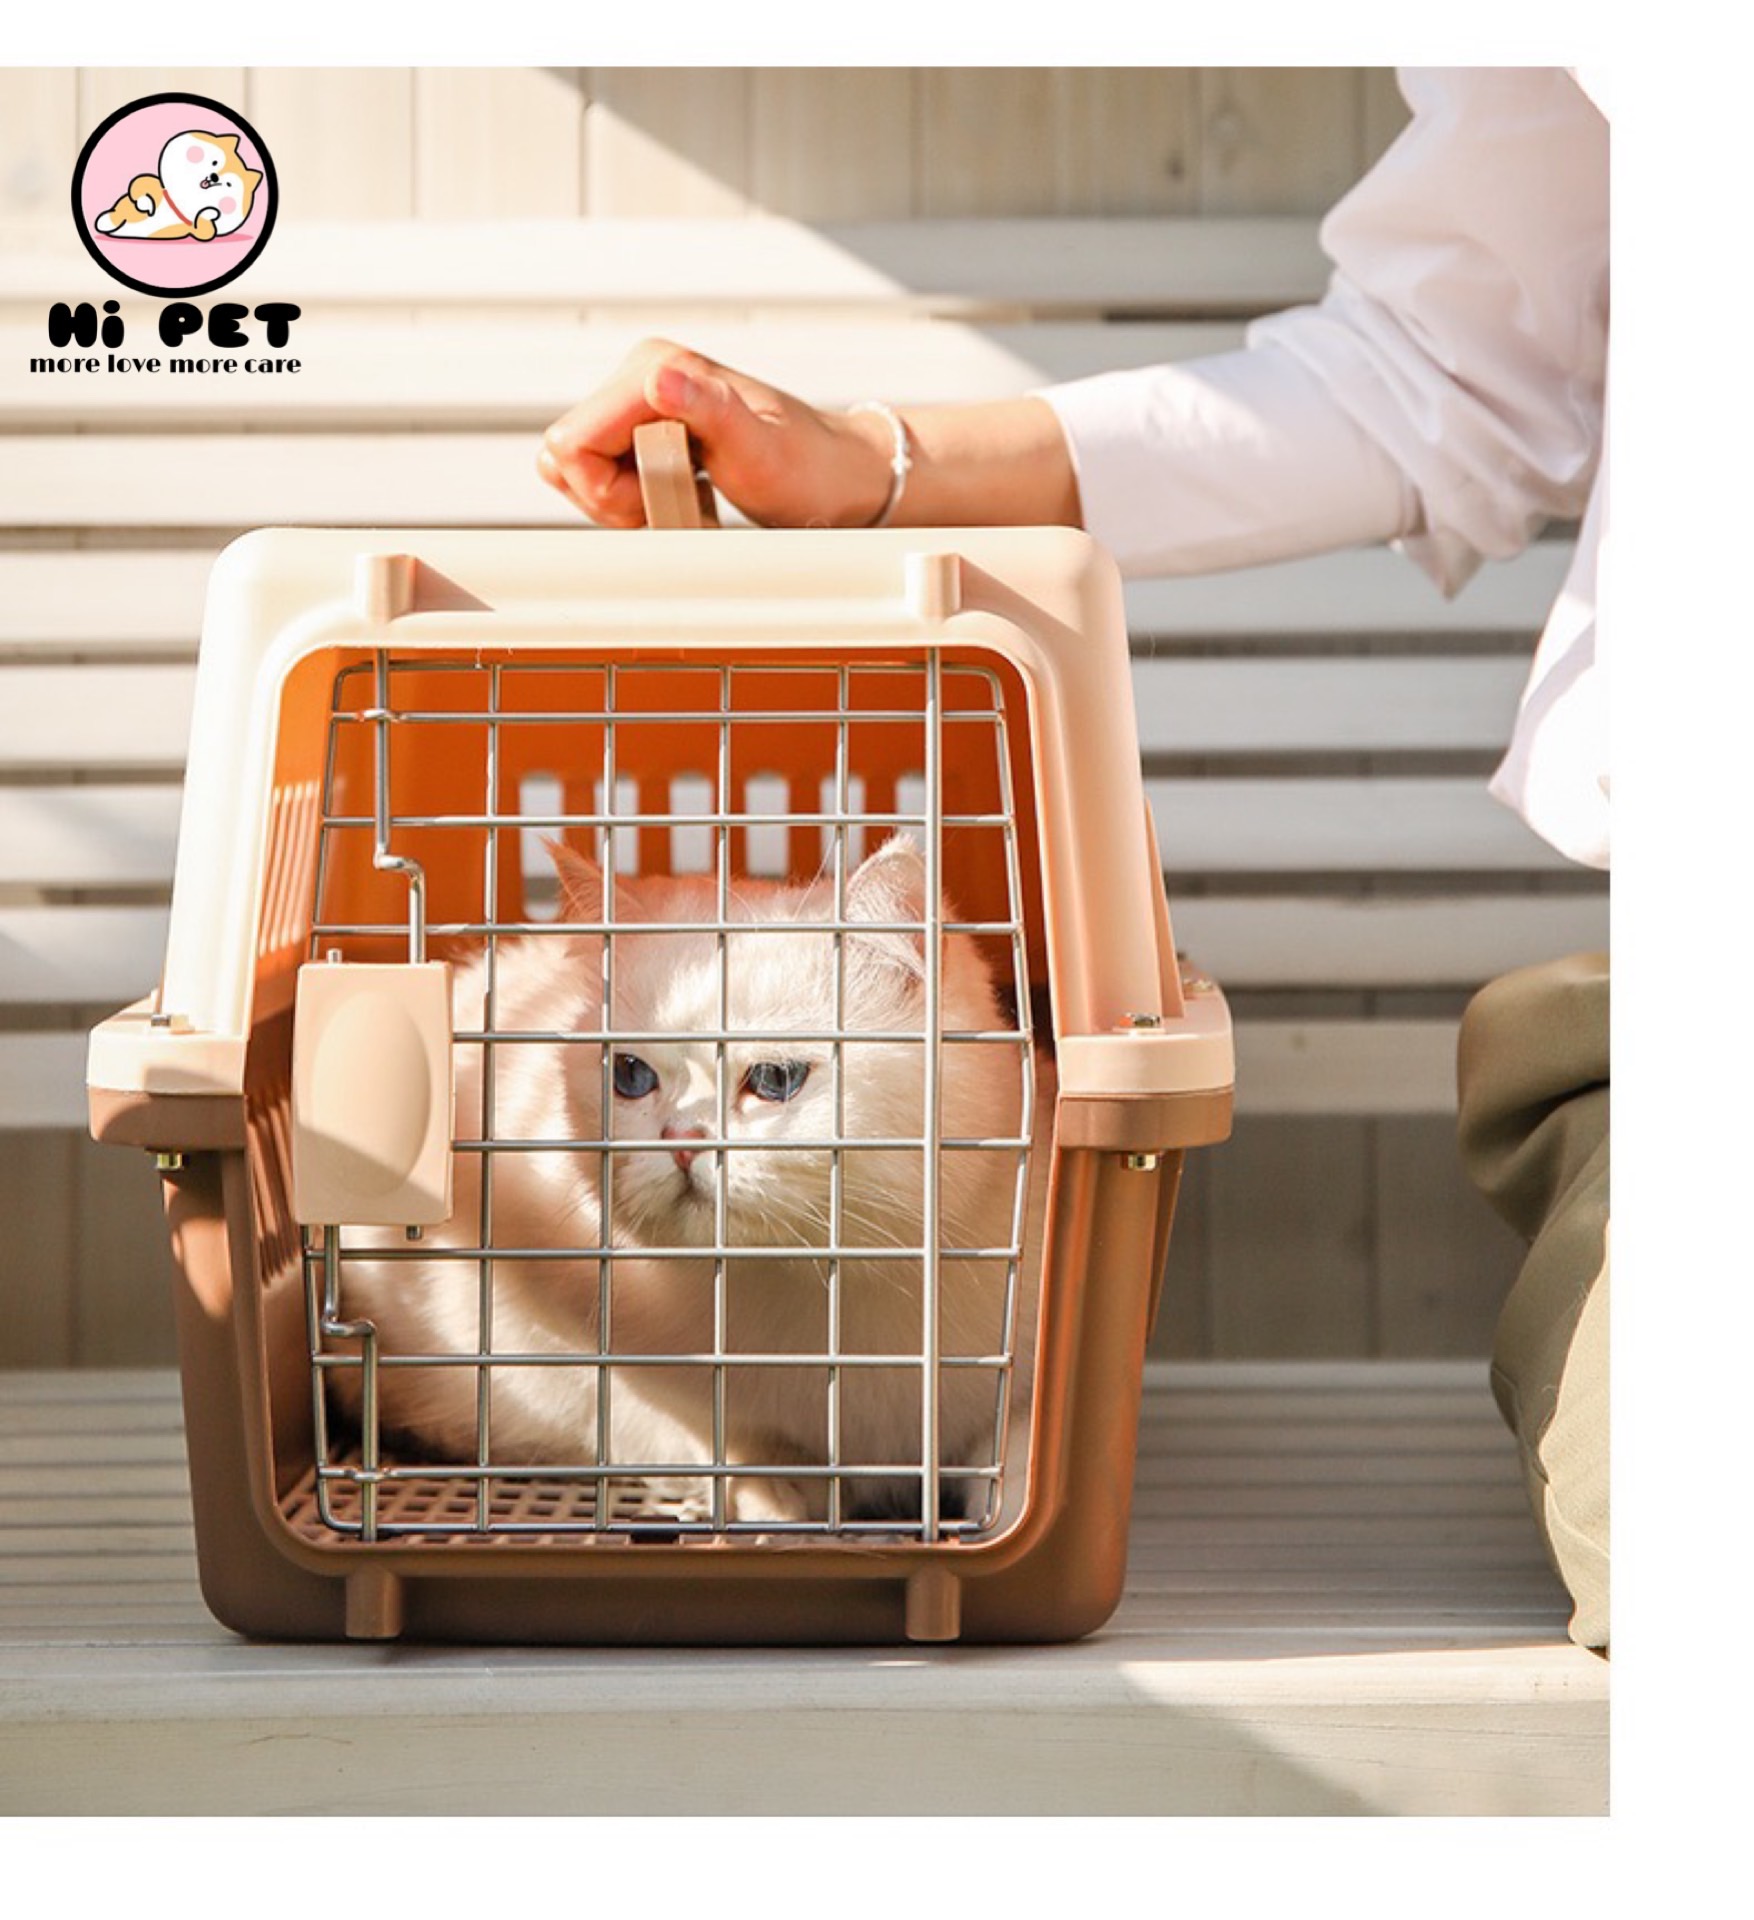 ?C&C Pets Family? Pet airplane box กรงเดินทาง กล่องเครื่องบินสัตว์เลี้ยง กล่องเดินทางสำหรับสัตว์เลี้ยง กล่องใส่สุนัข boxใส่สุนัข กล่องใส่แมว boxใส่